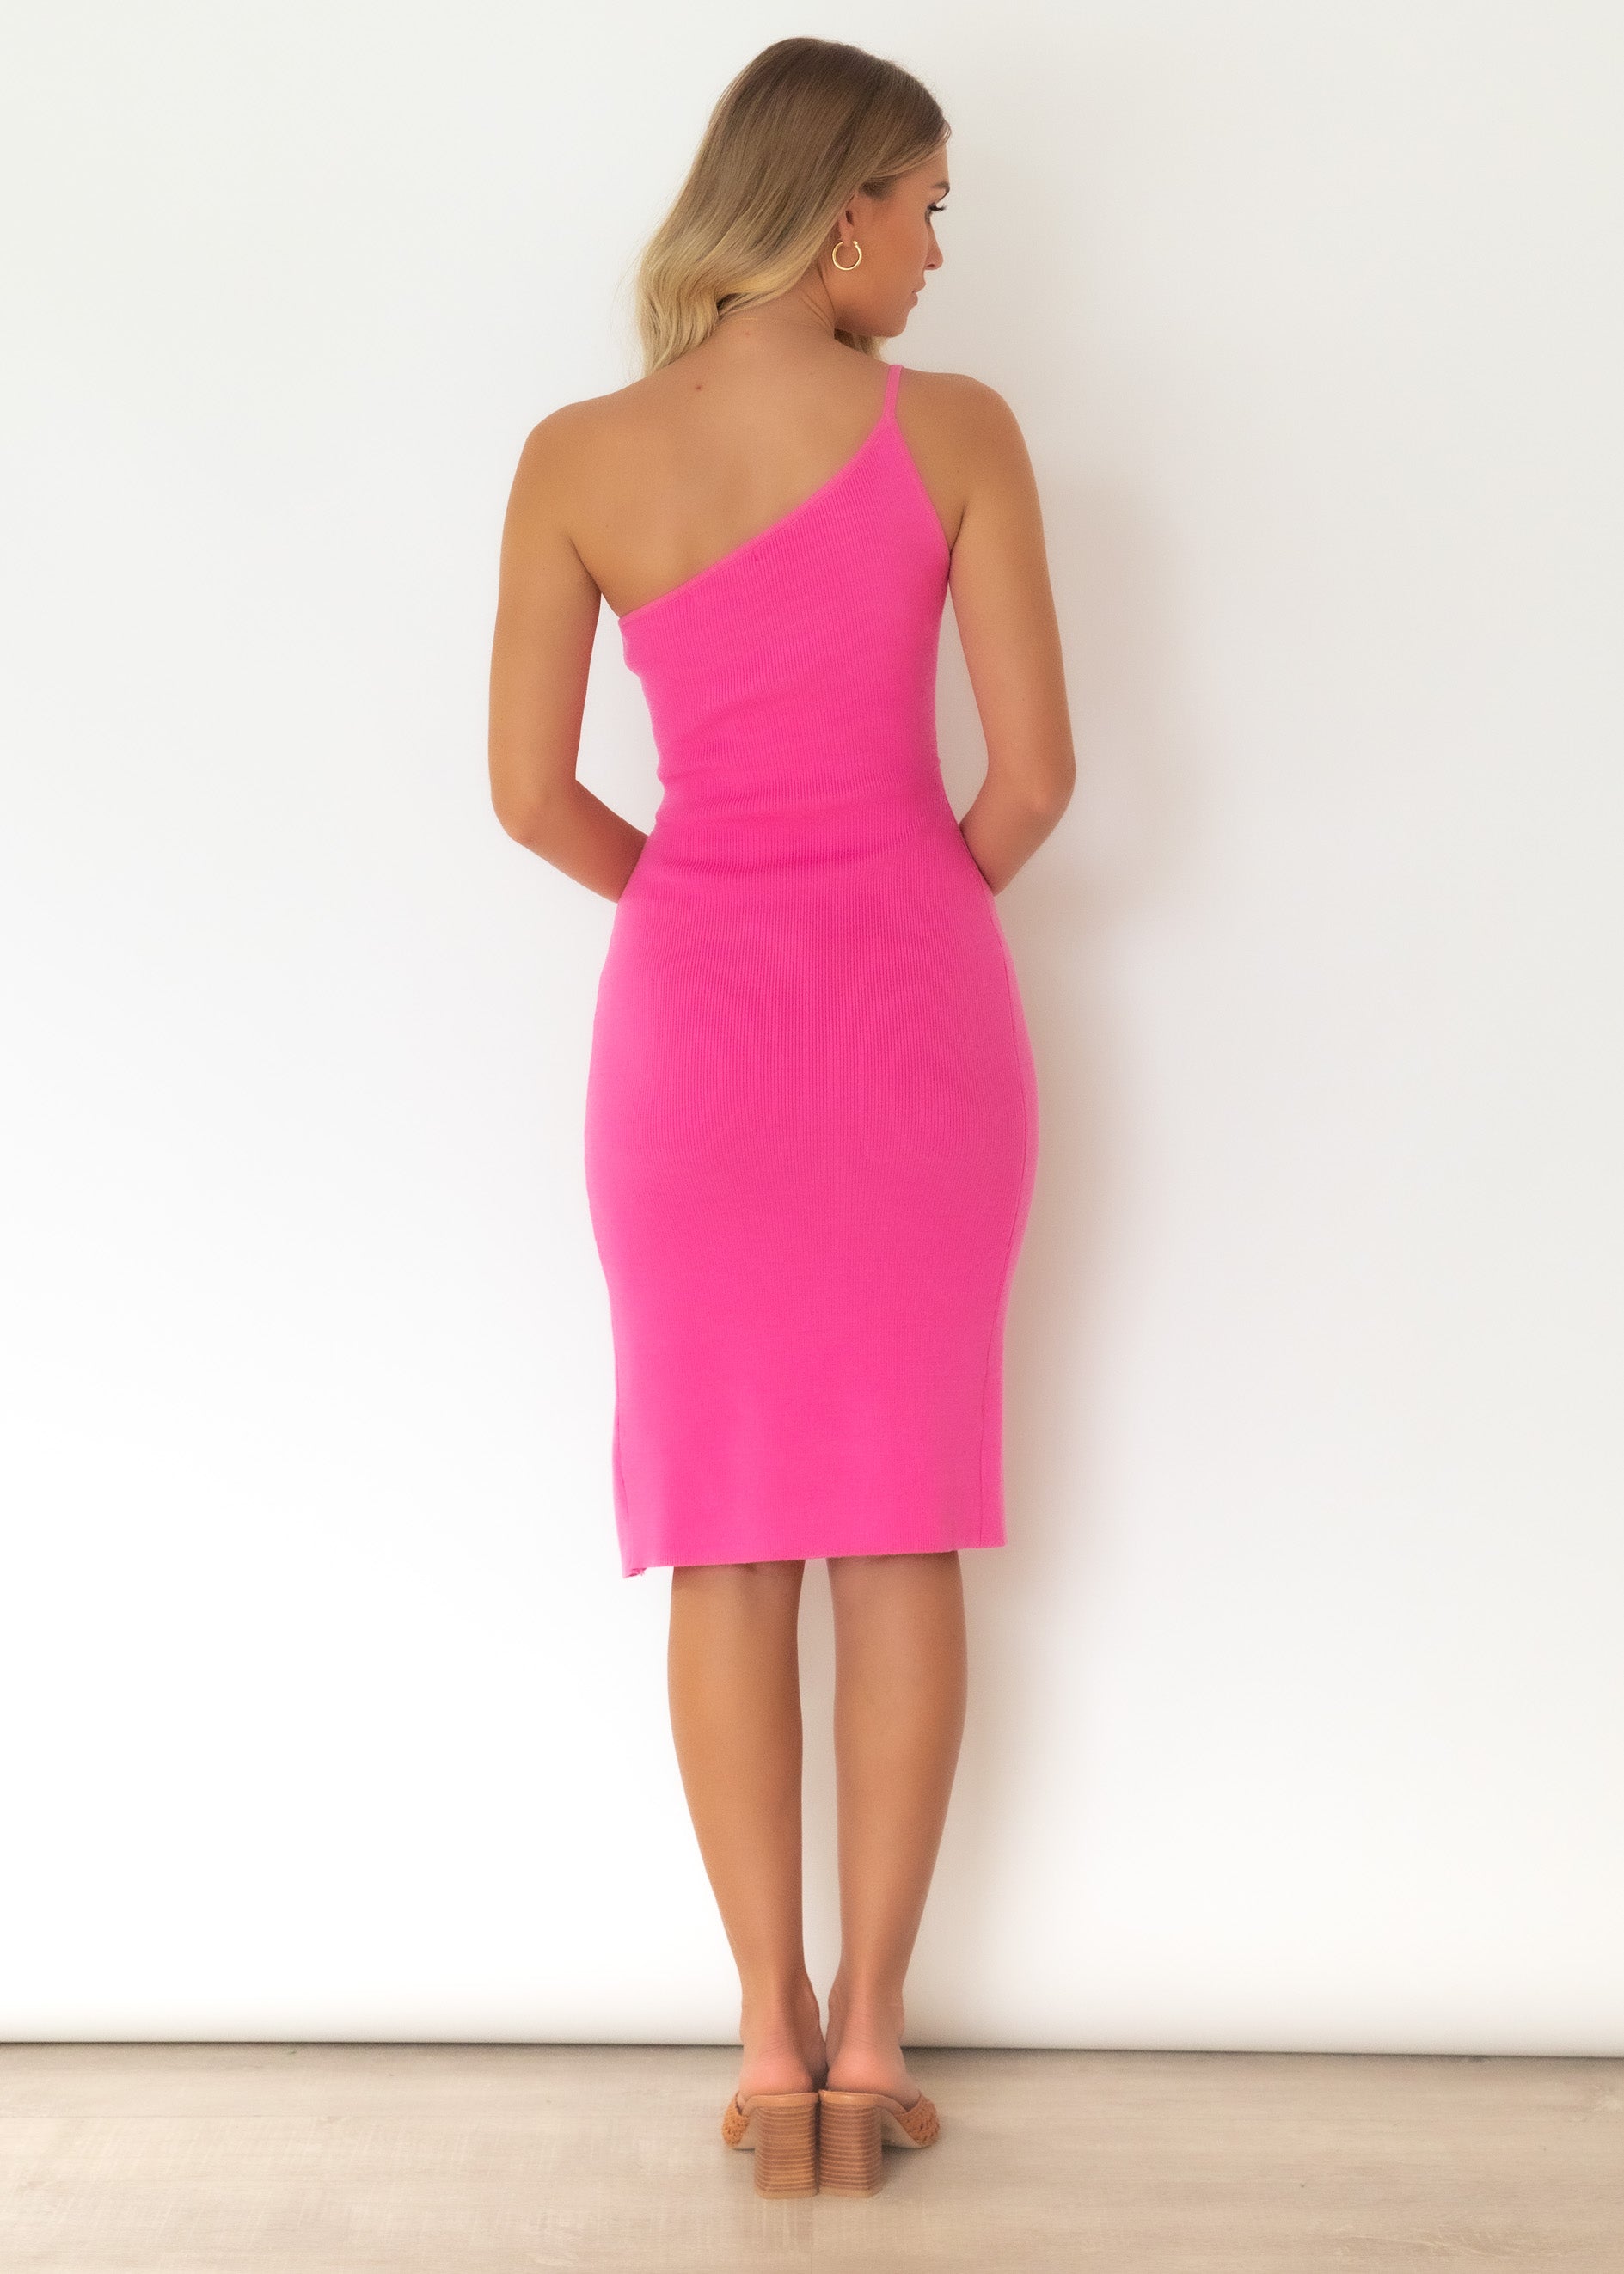 Cintra Knit Midi Dress - Hot Pink